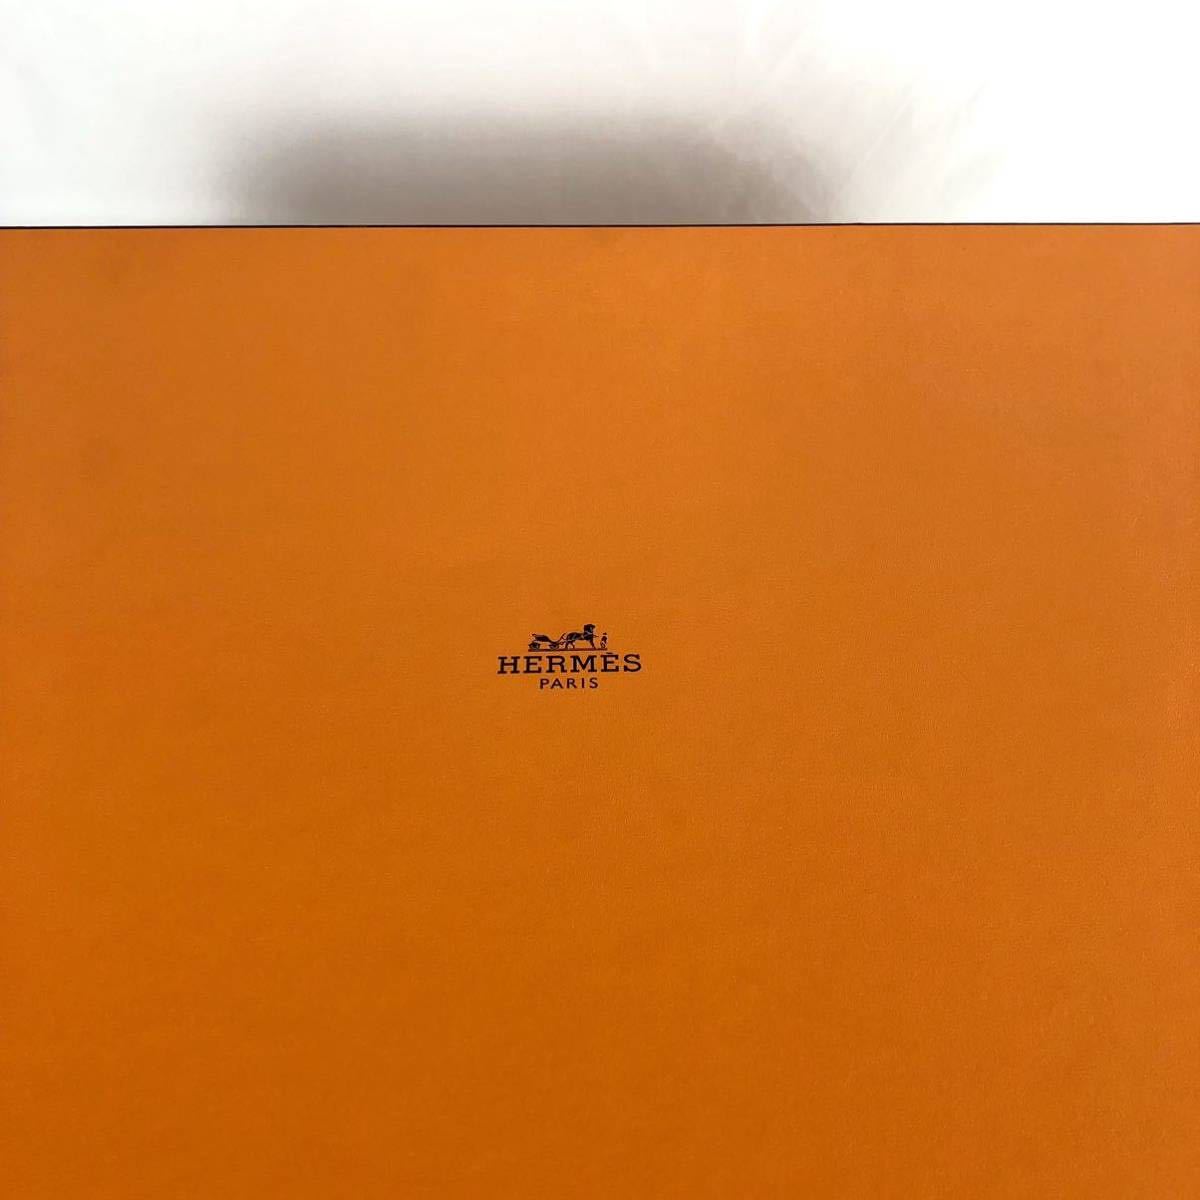 HERMES エルメス 空箱 空き箱 592 オレンジ BOX ボックス 特大 大型 保存箱 53×40×16.5 46×32×17_画像3